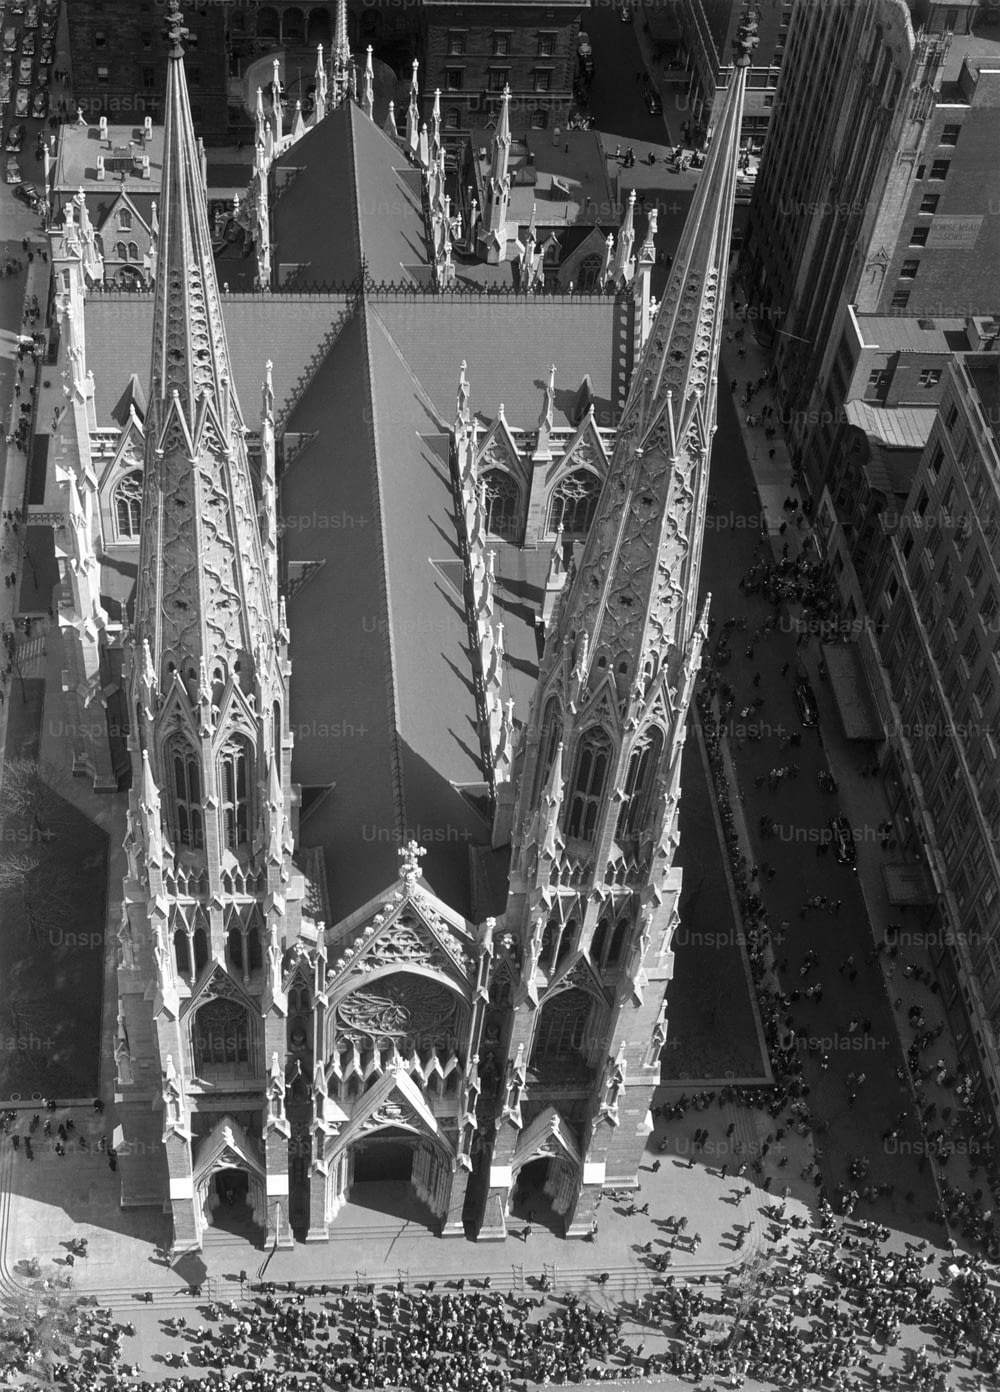 ÉTATS-UNIS - Vers les années 1950 : New York, cathédrale Saint-Patrick.